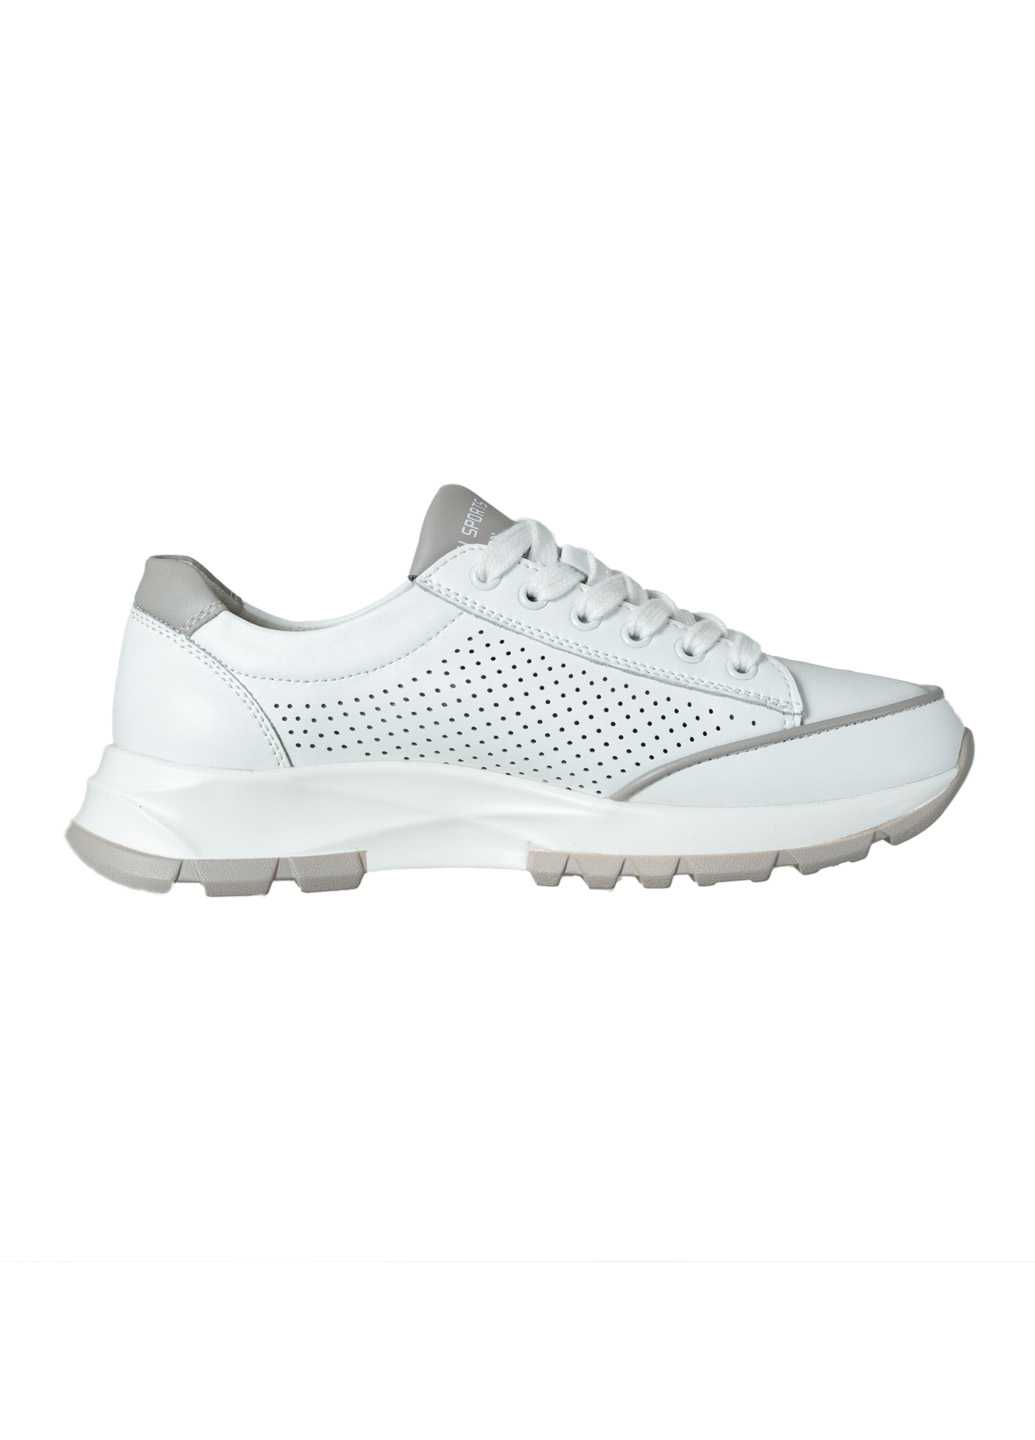 Жіночі кросівки Lifexpert біло-сірого кольору з перфорацією